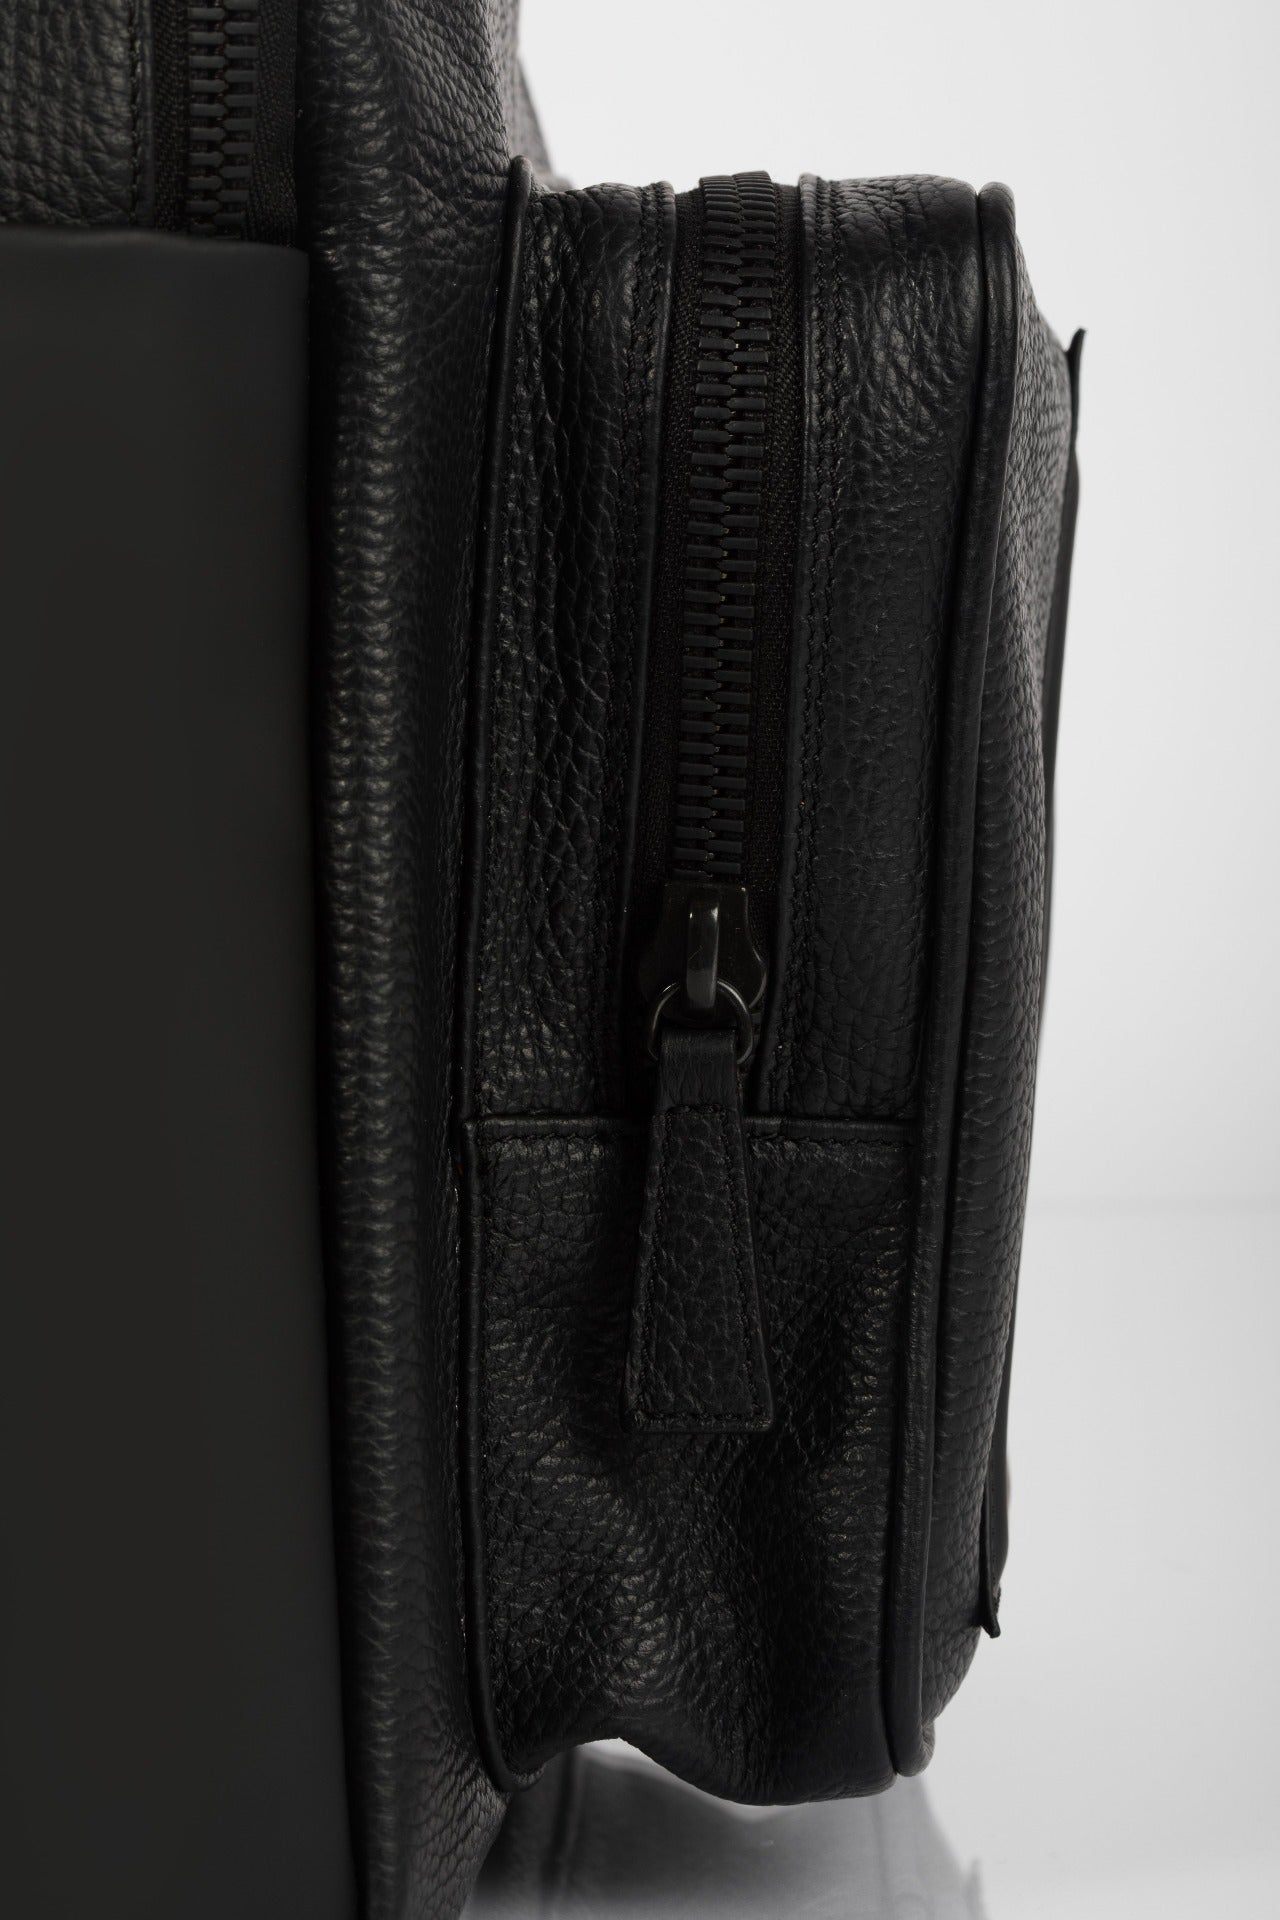 Black leather structured urban unisex backpack - Soho Bagology – BAGOLOGY